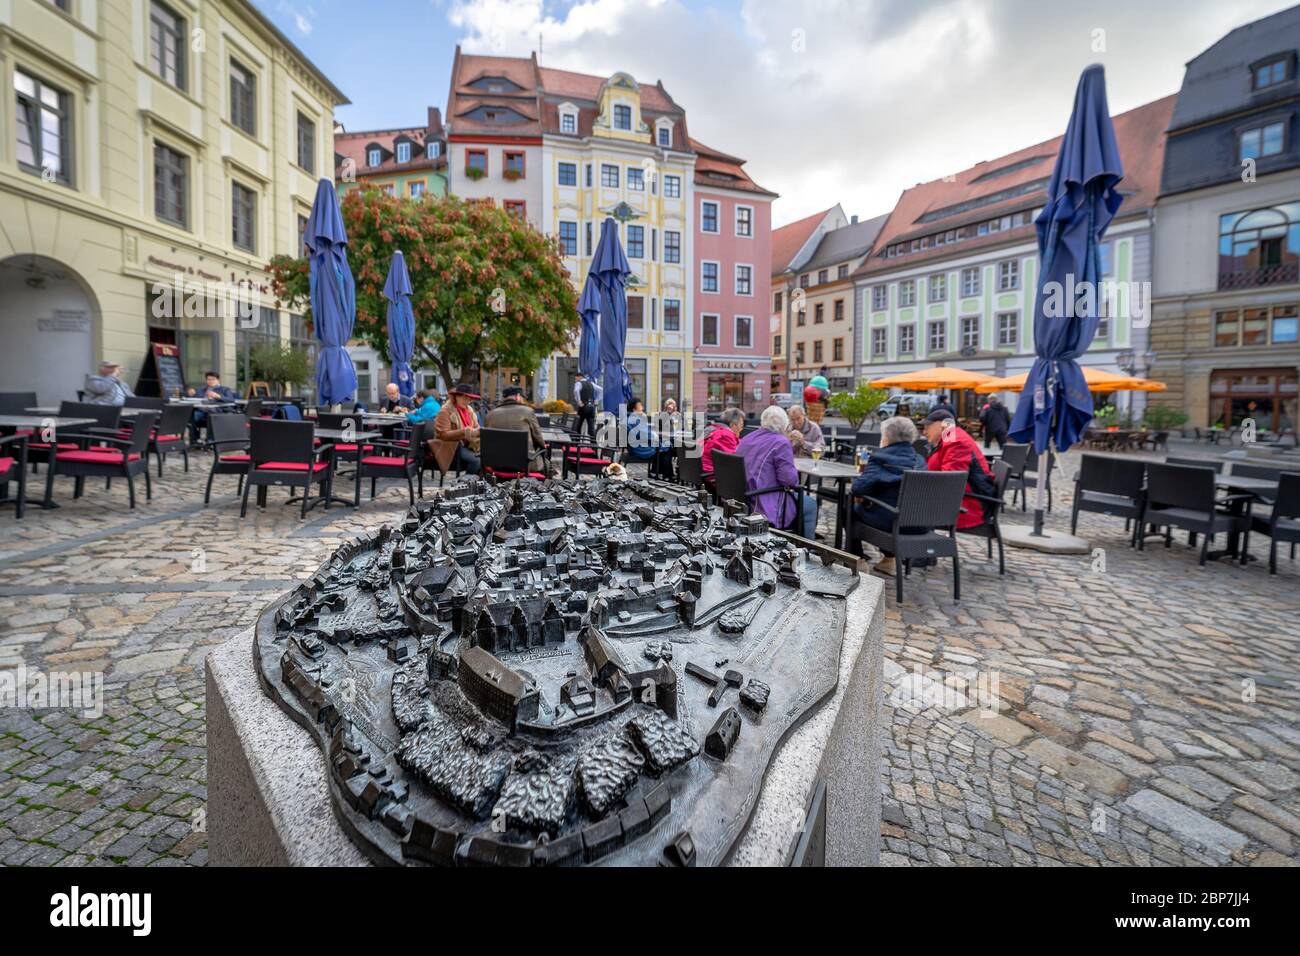 BAUTZEN, Germania - 10 ottobre 2019: Piazza del Municipio e street cafe. In primo piano è la pianta della citta'. Foto Stock